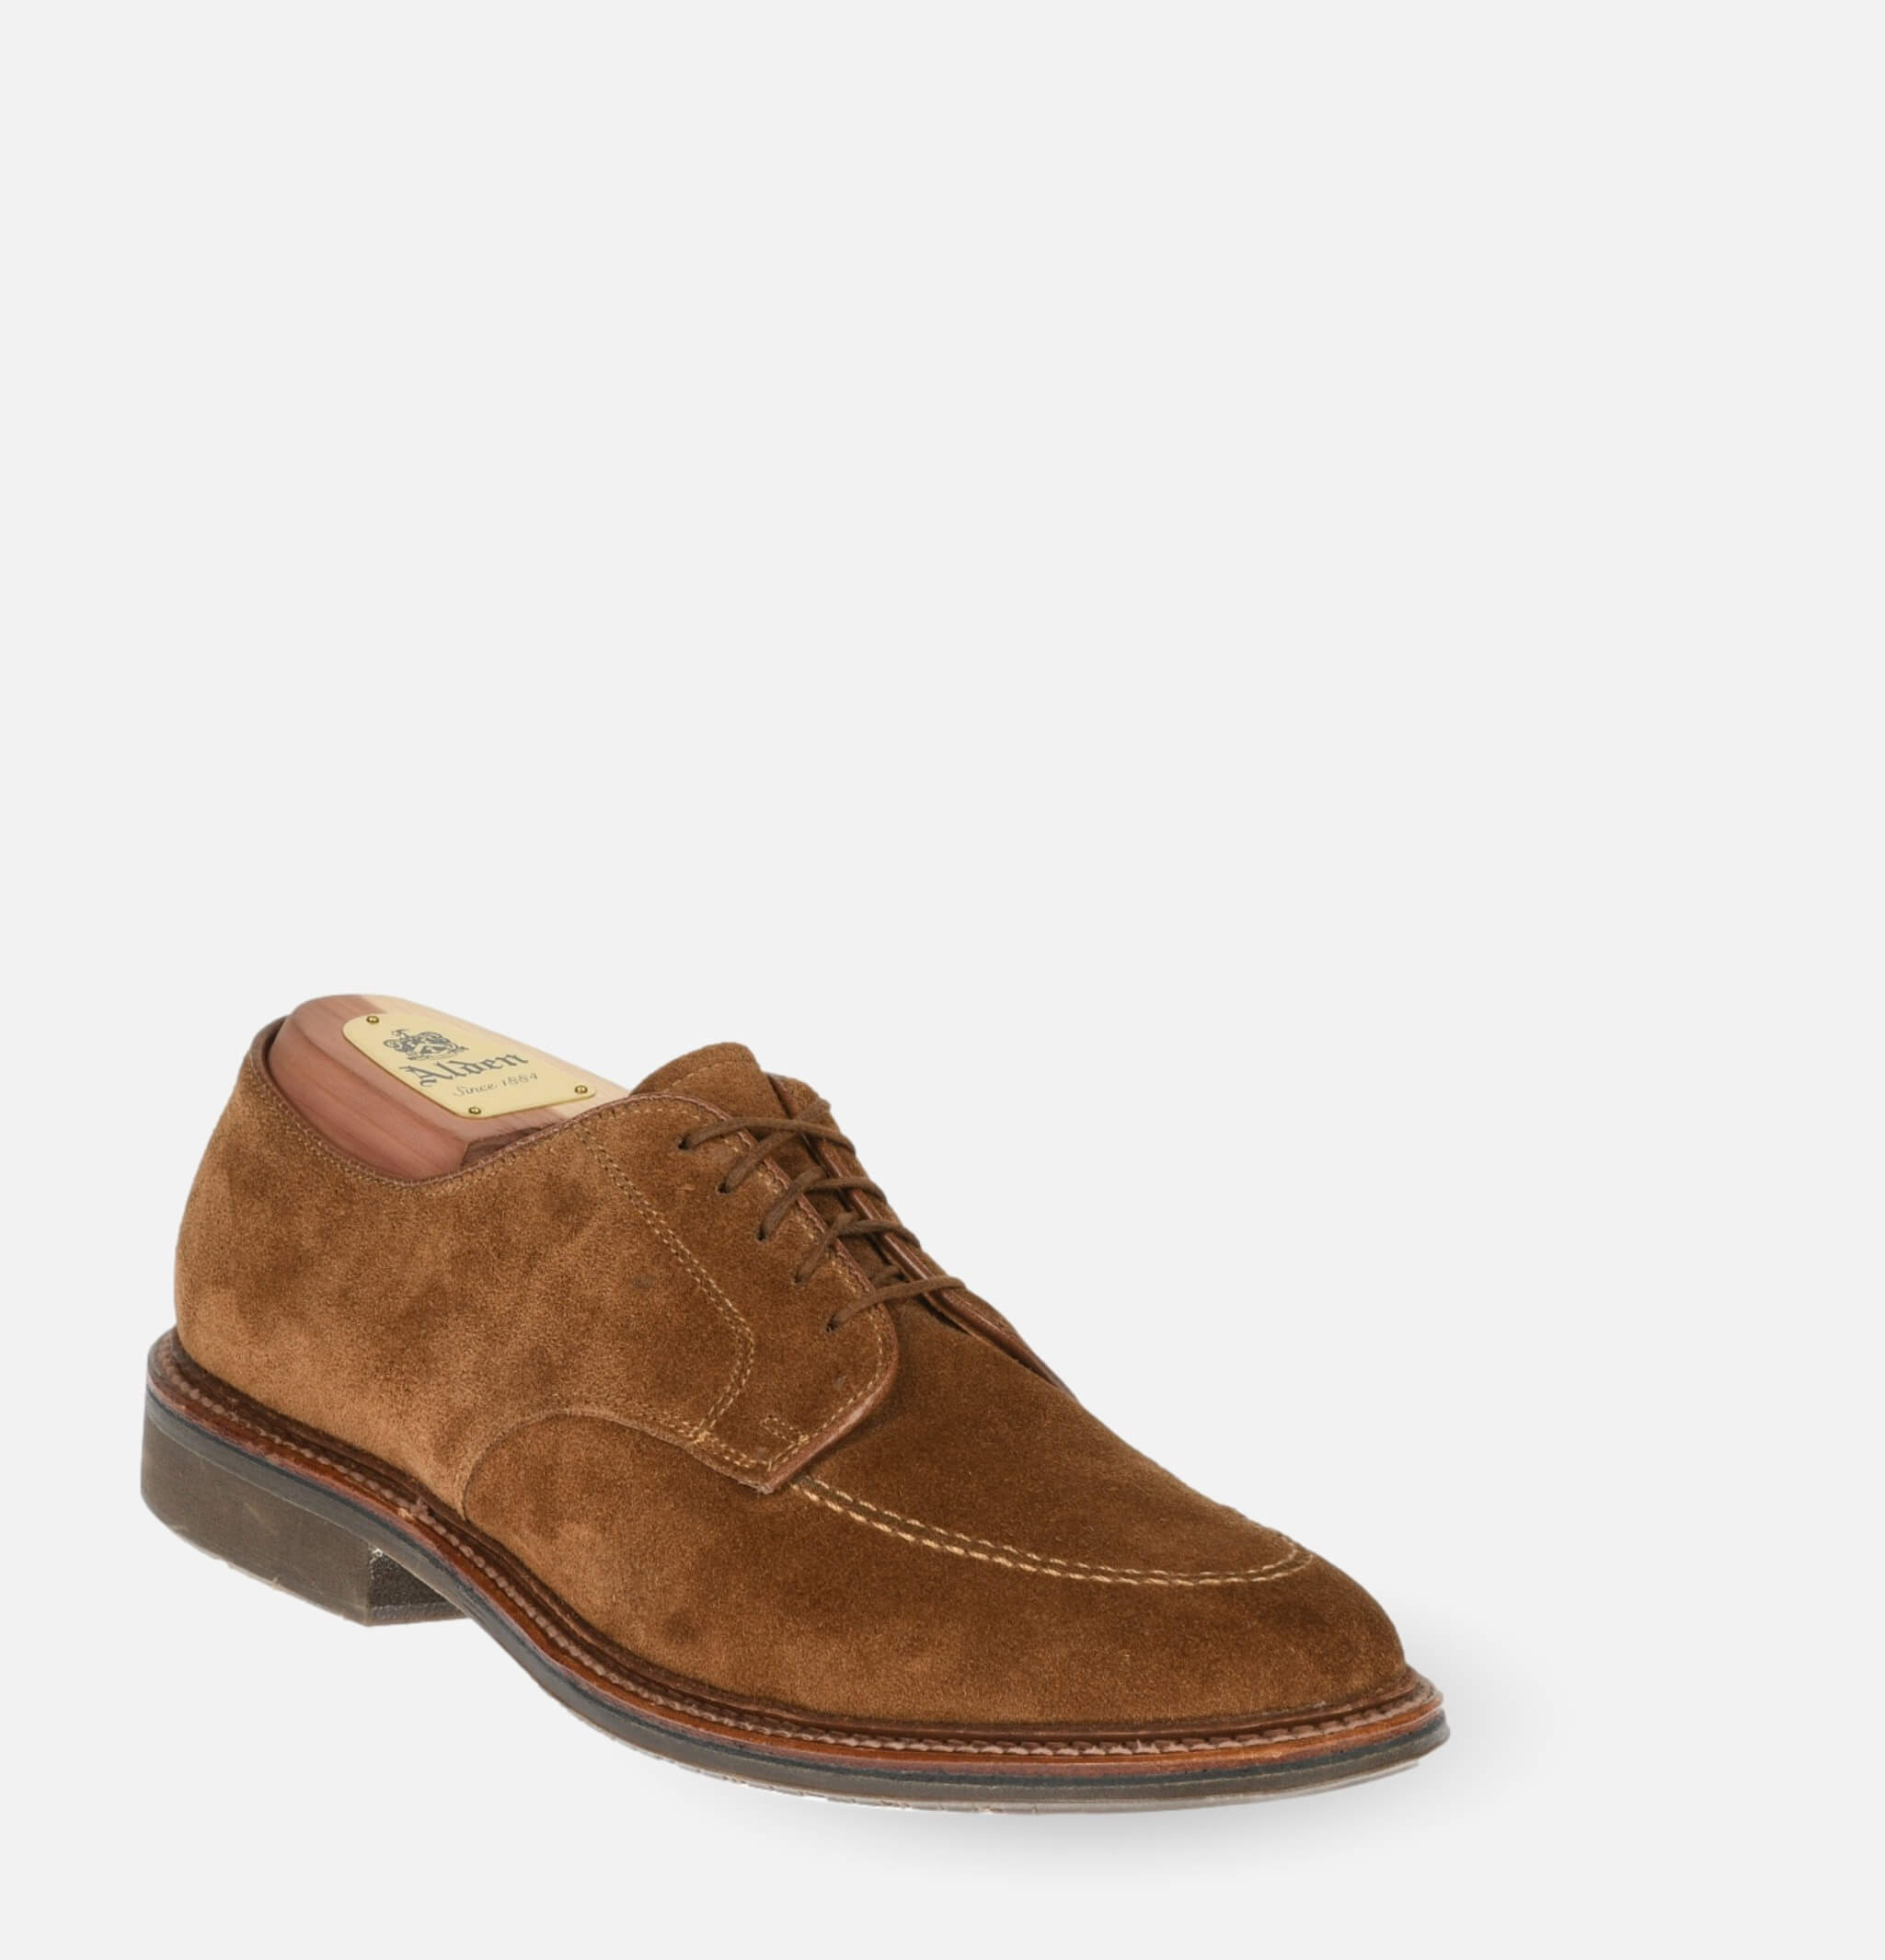 702R - Plain Toe Shoes Snuff Suede